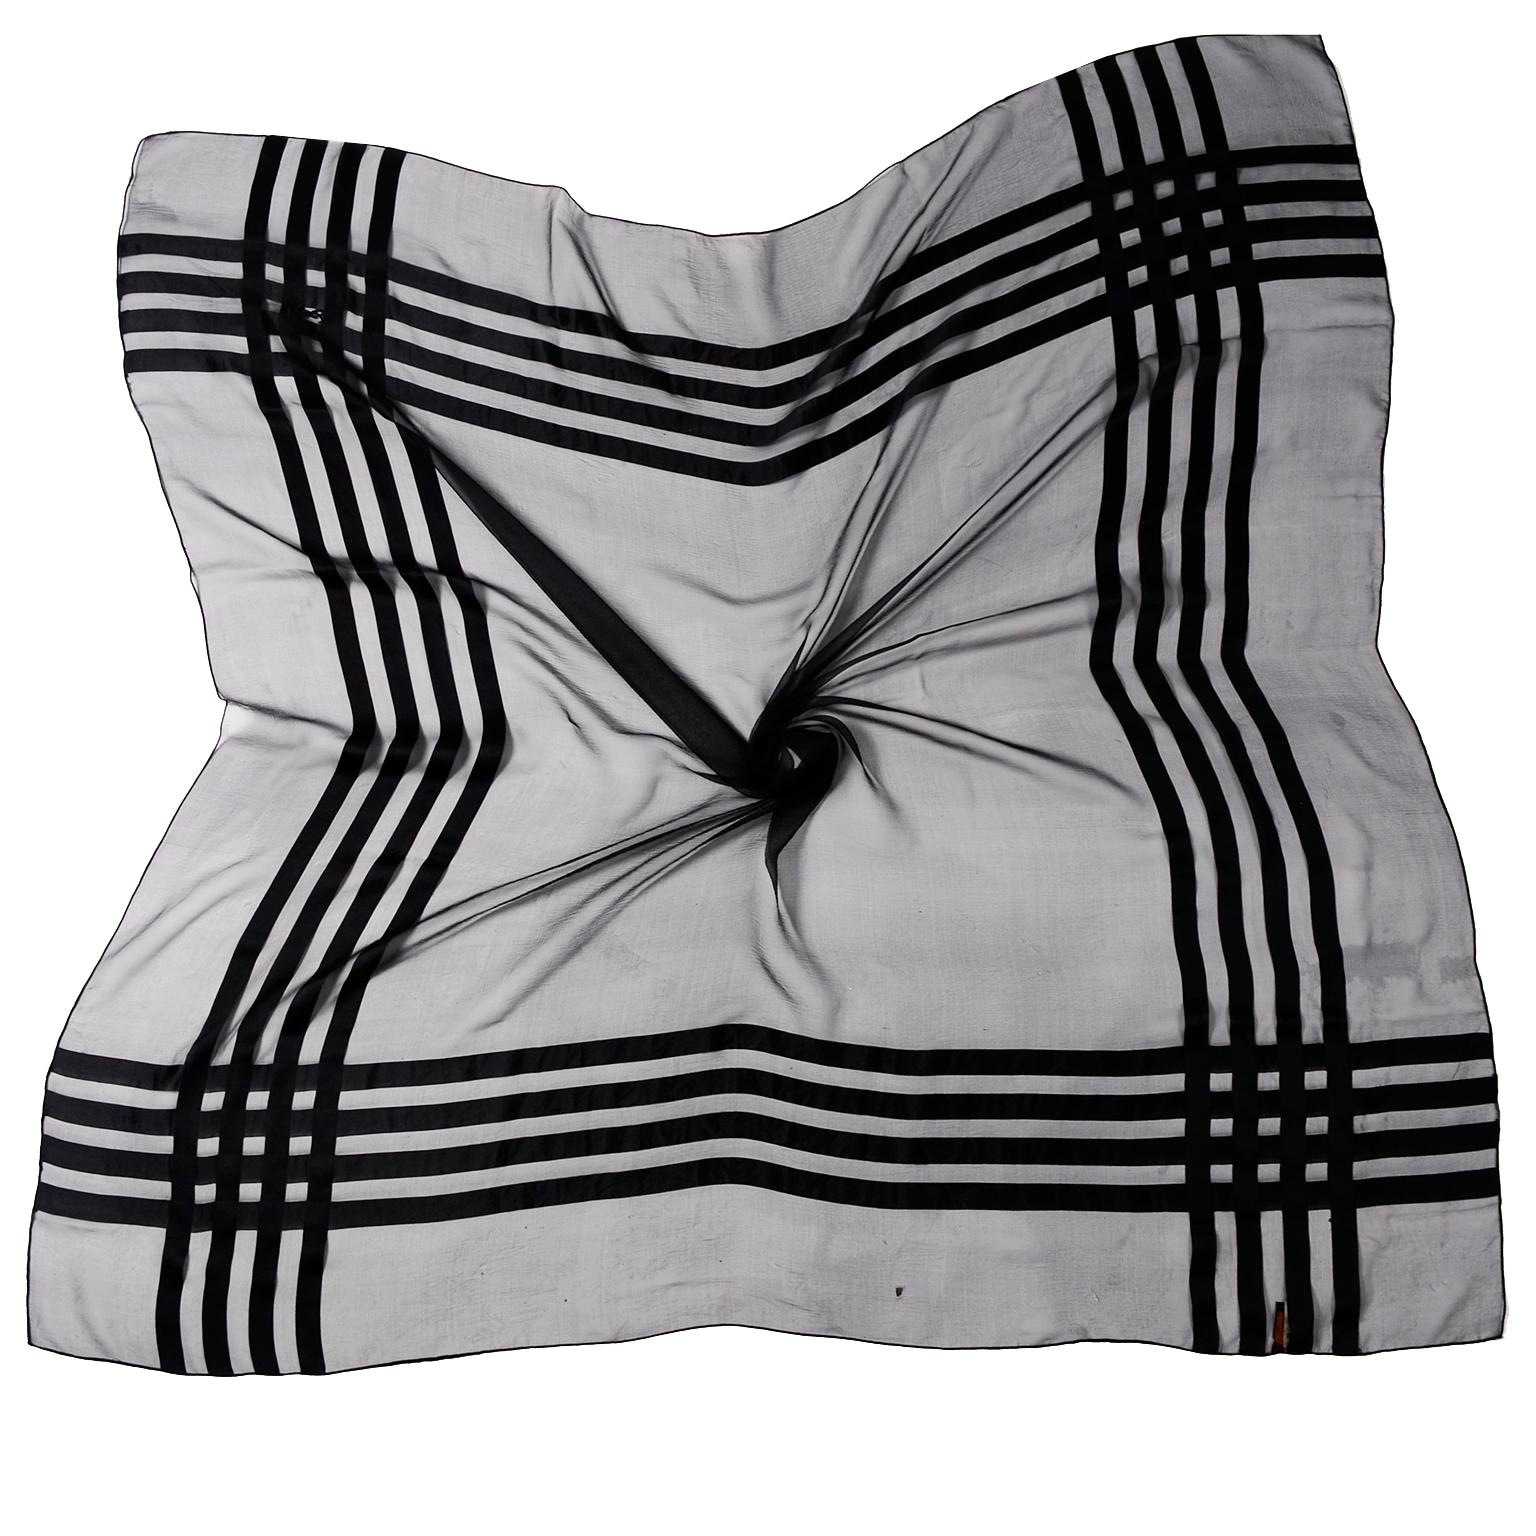 Yves Saint Laurent Foulard - 4 For Sale on 1stDibs | ysl foulard 